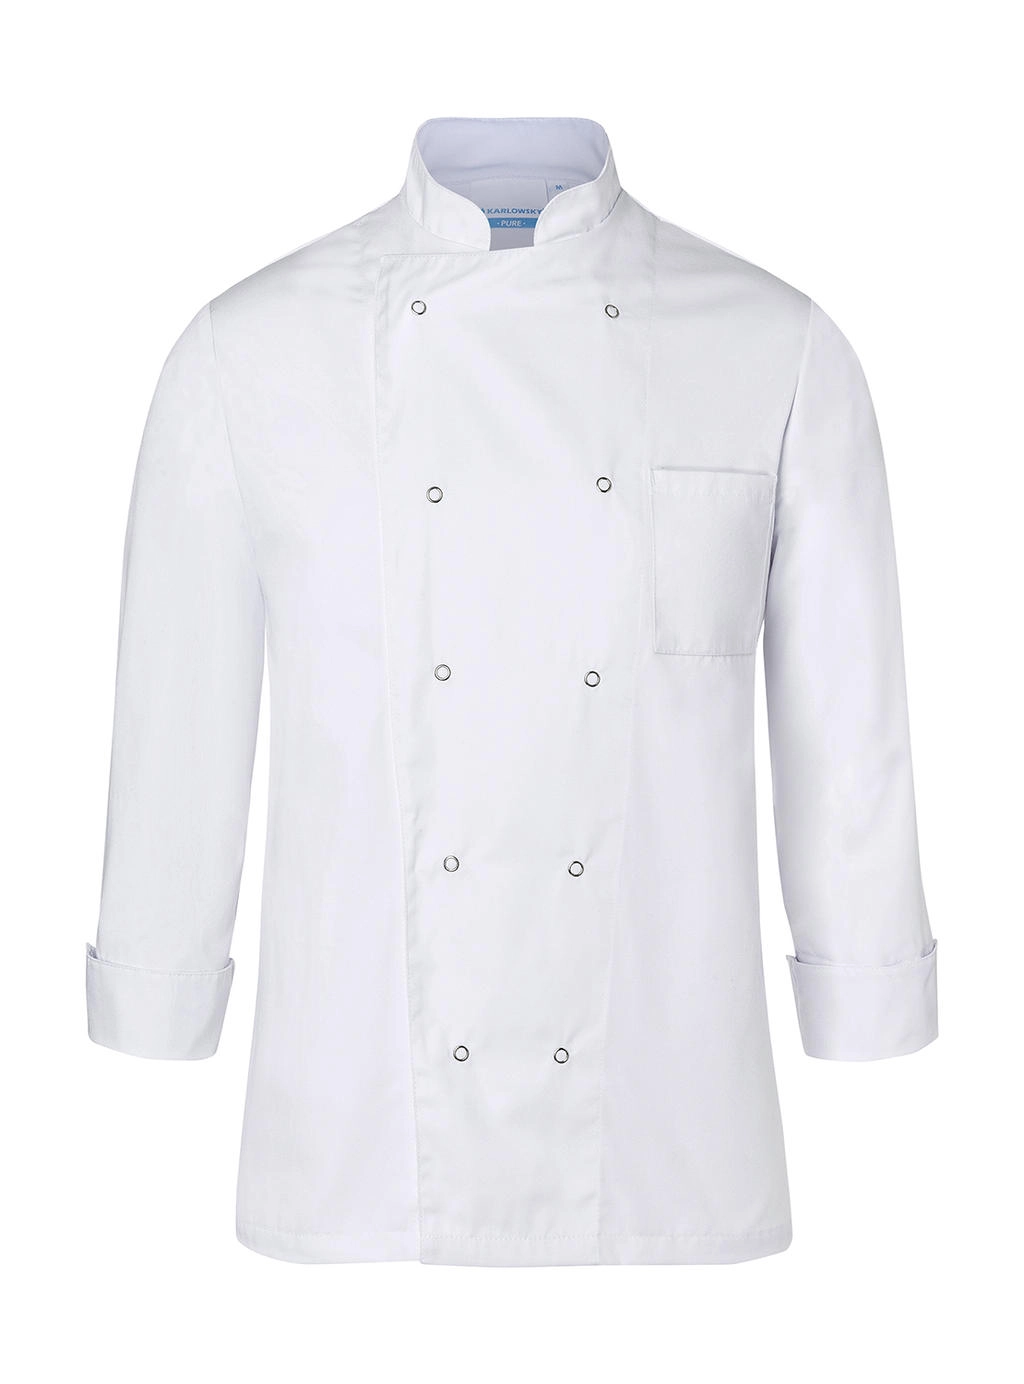 Chef Jacket Basic Unisex zum Besticken und Bedrucken in der Farbe White mit Ihren Logo, Schriftzug oder Motiv.